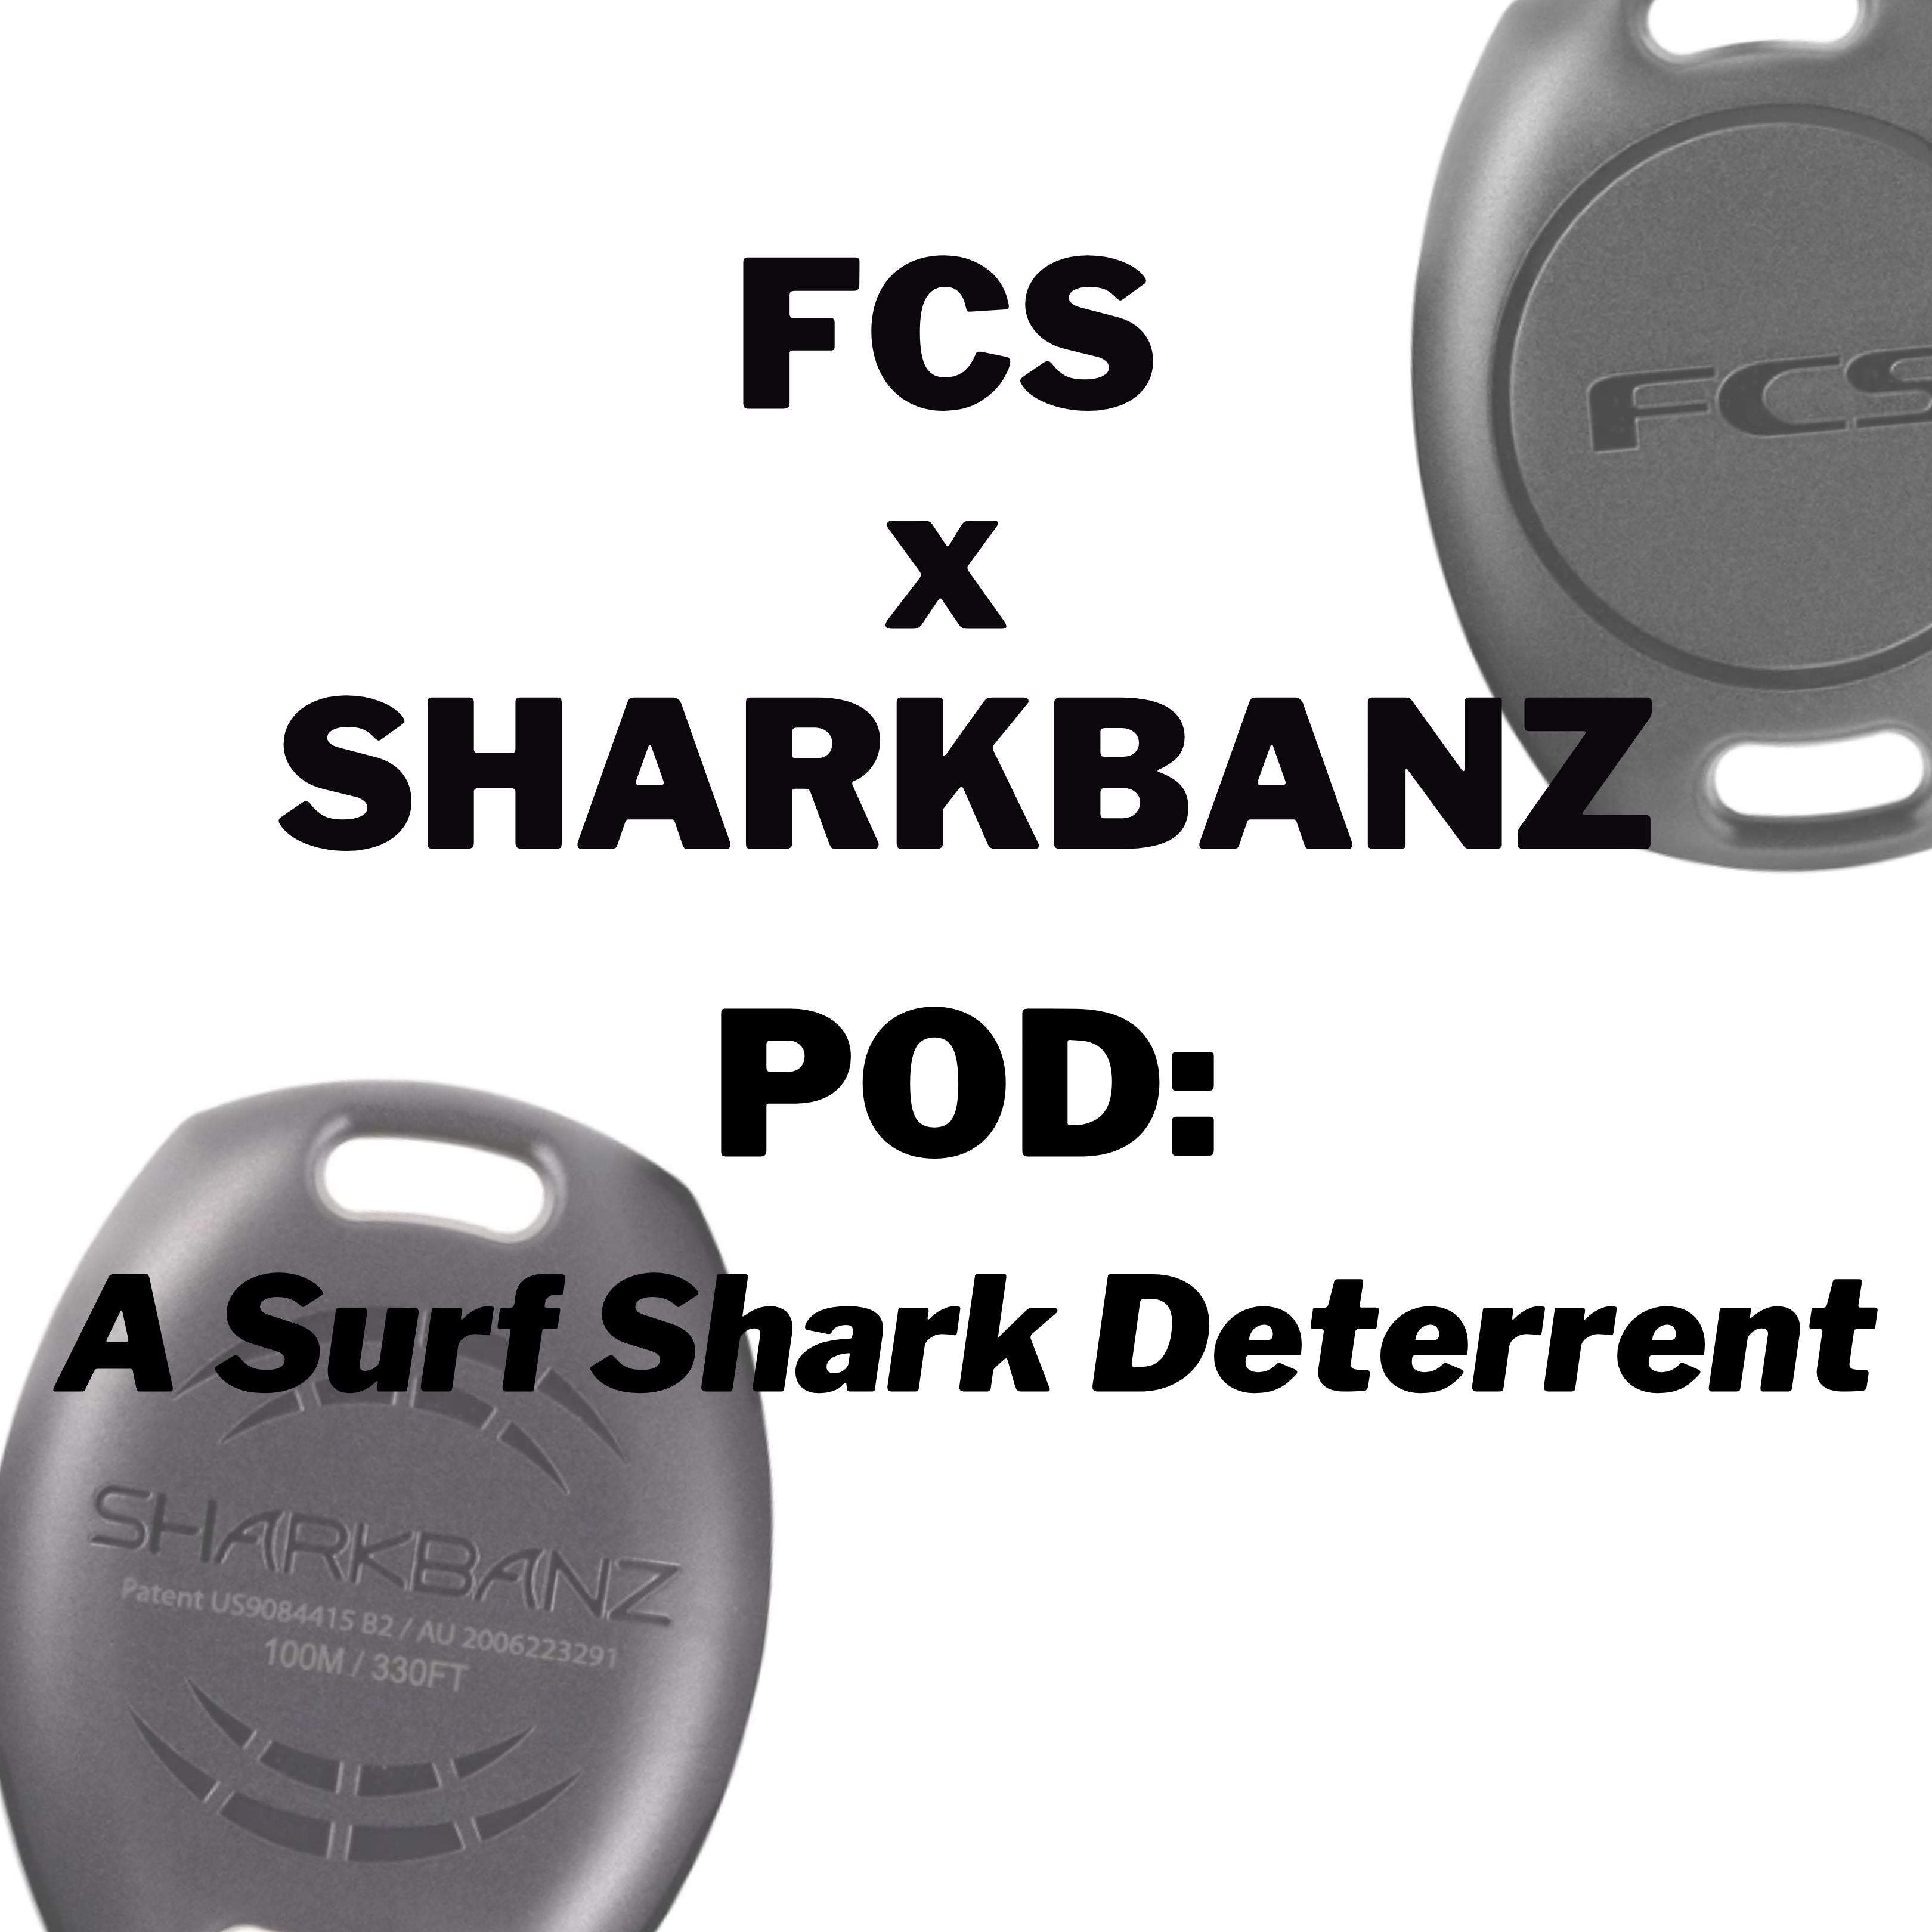 FCS X Sharkbanz POD - Surf Shark Deterrent